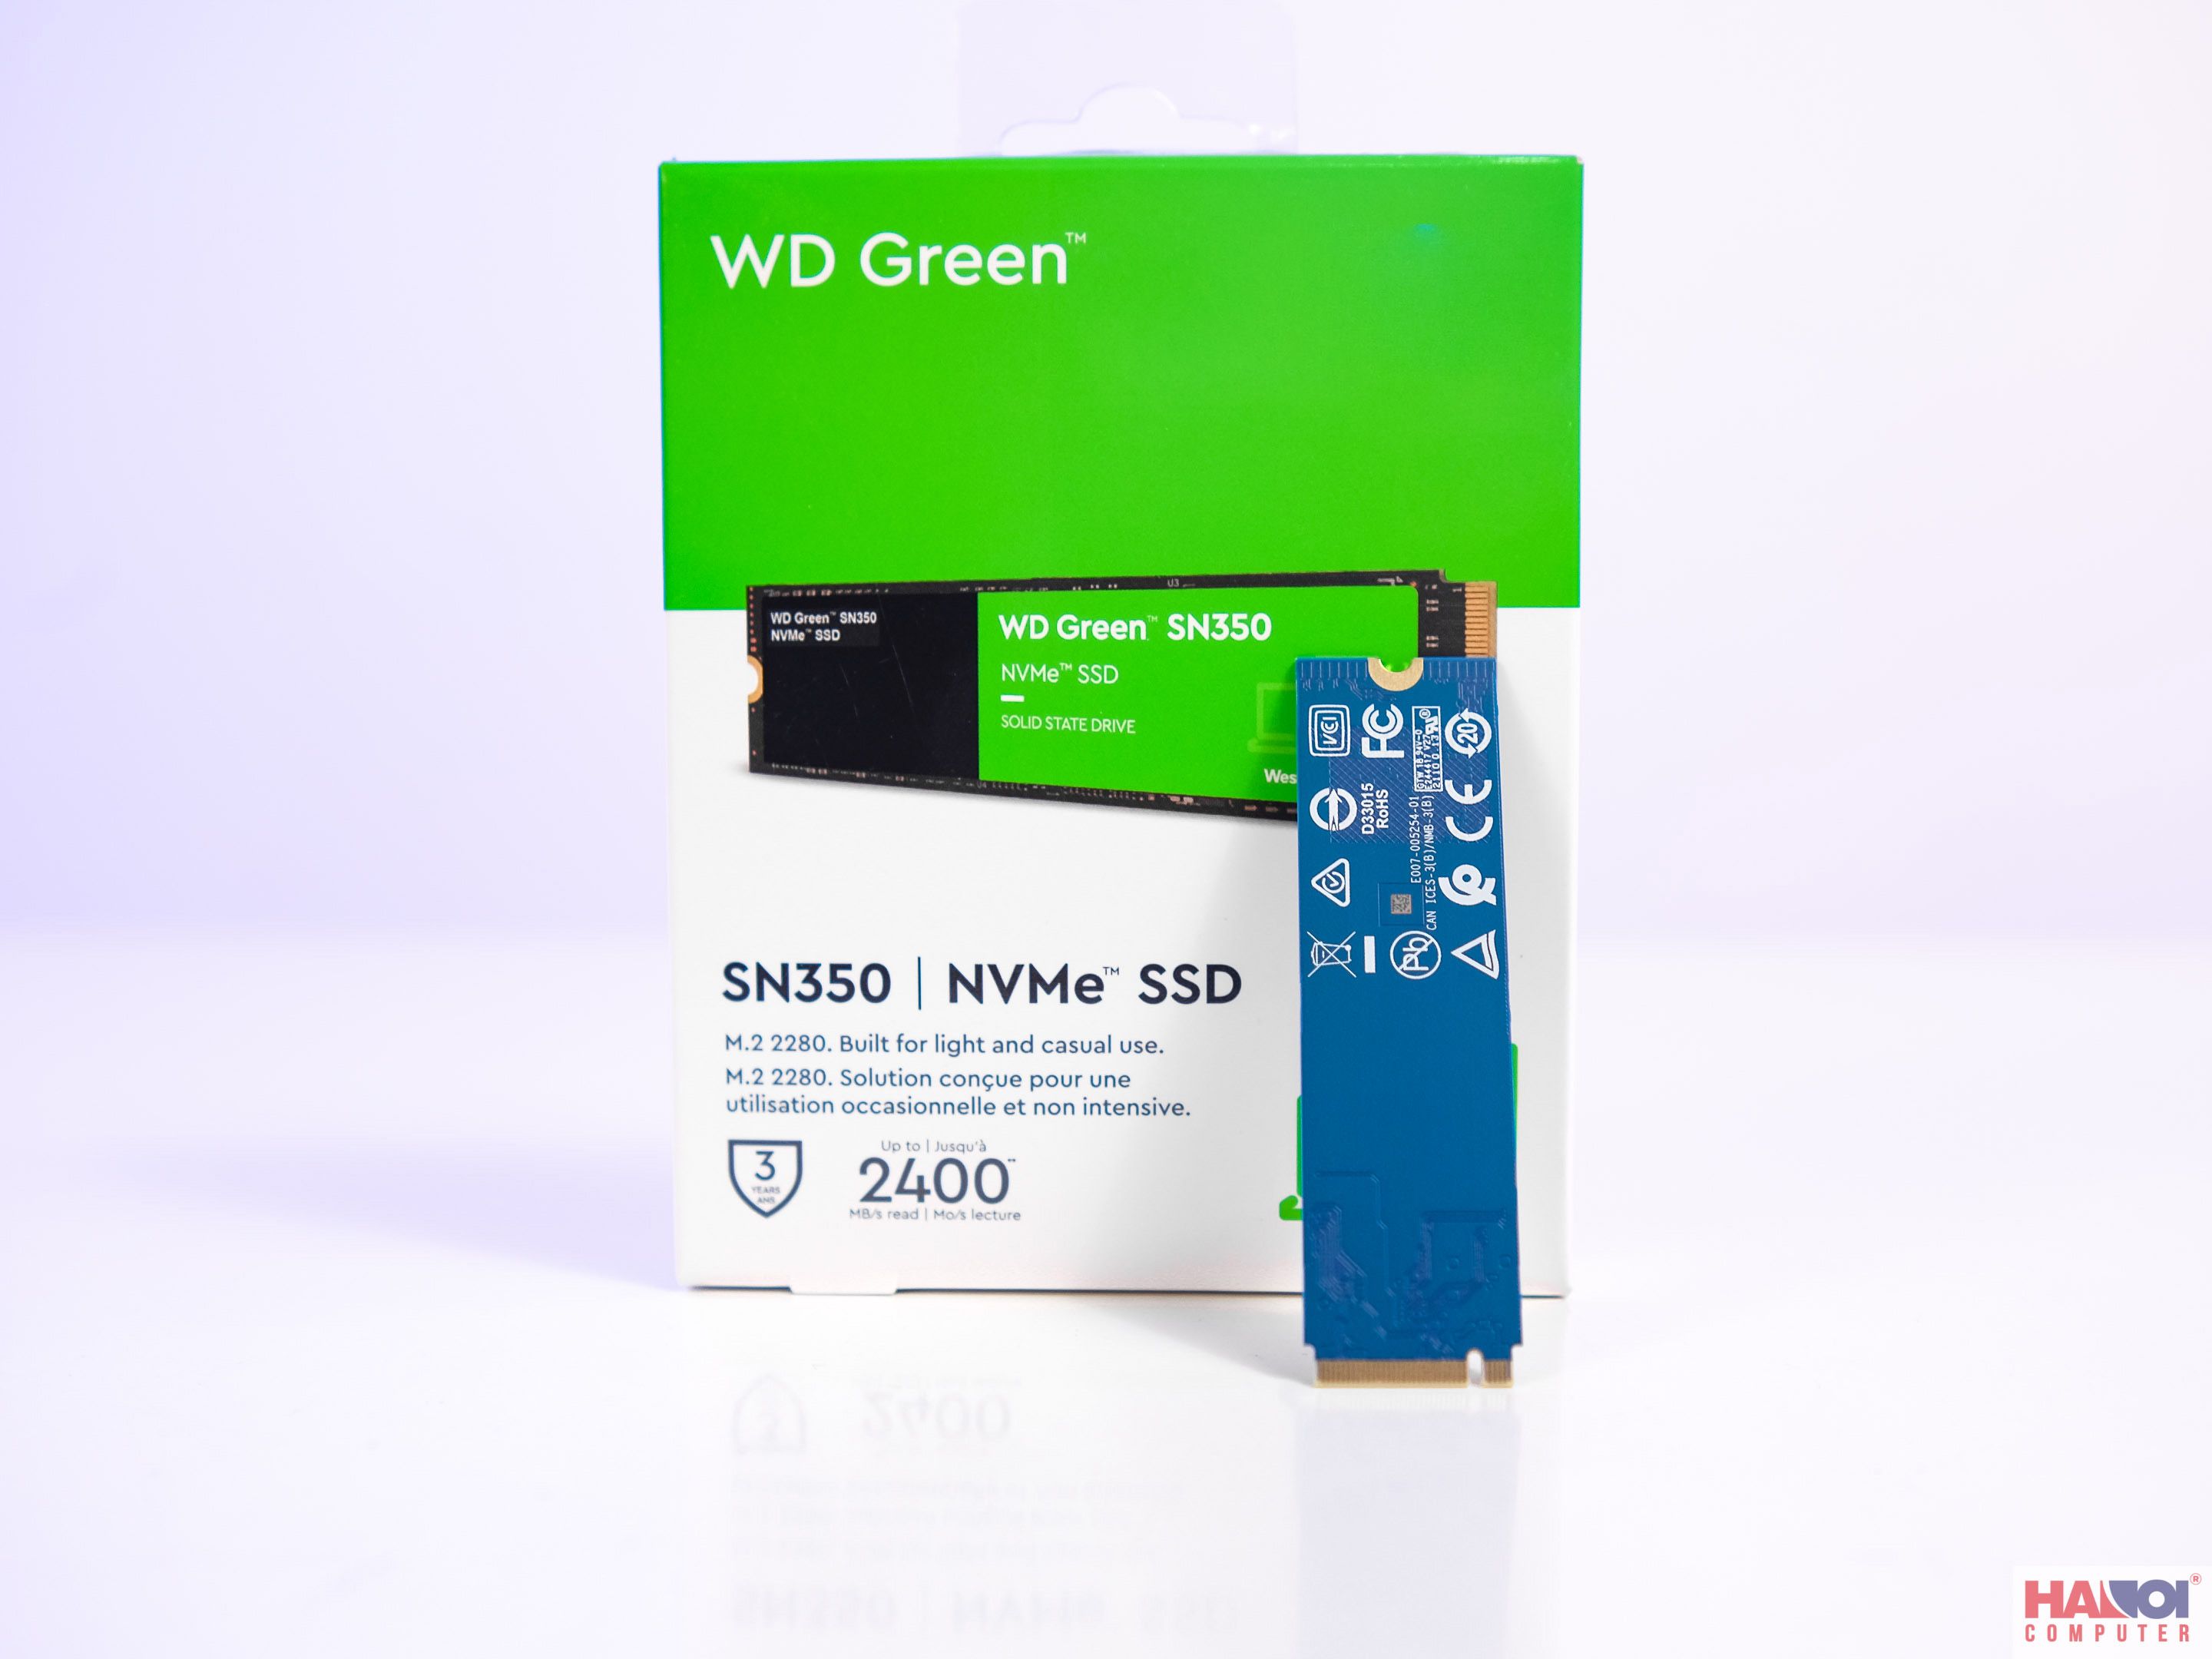 WD Green SN350 - 480 Go NVMe™ SSD - Bleu presentation